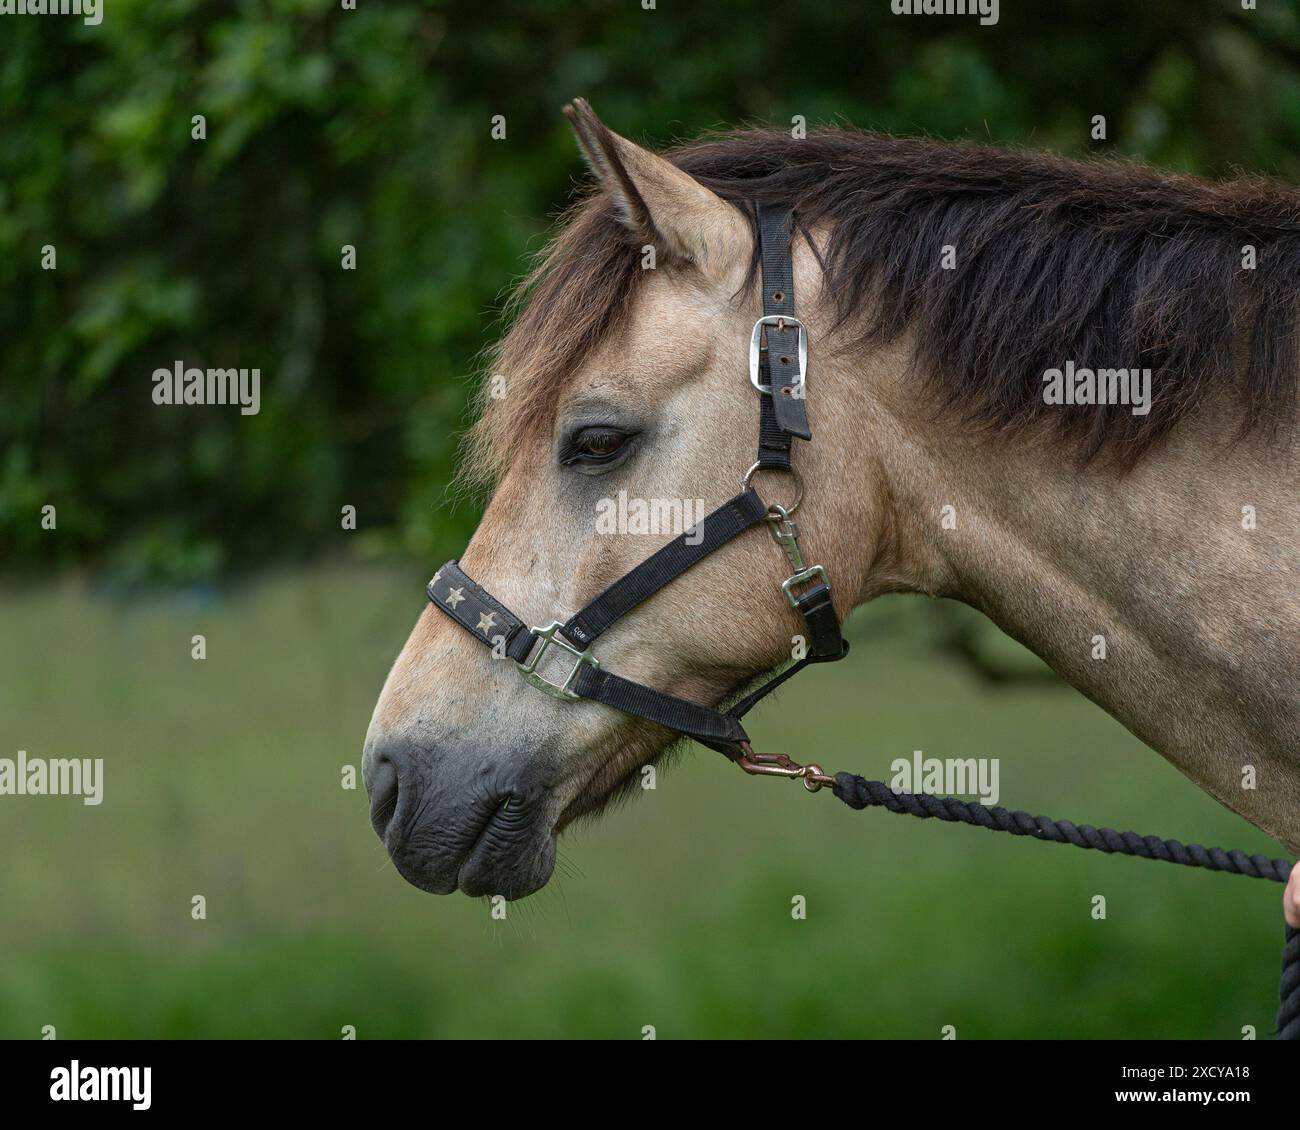 connemara pony Stock Photo